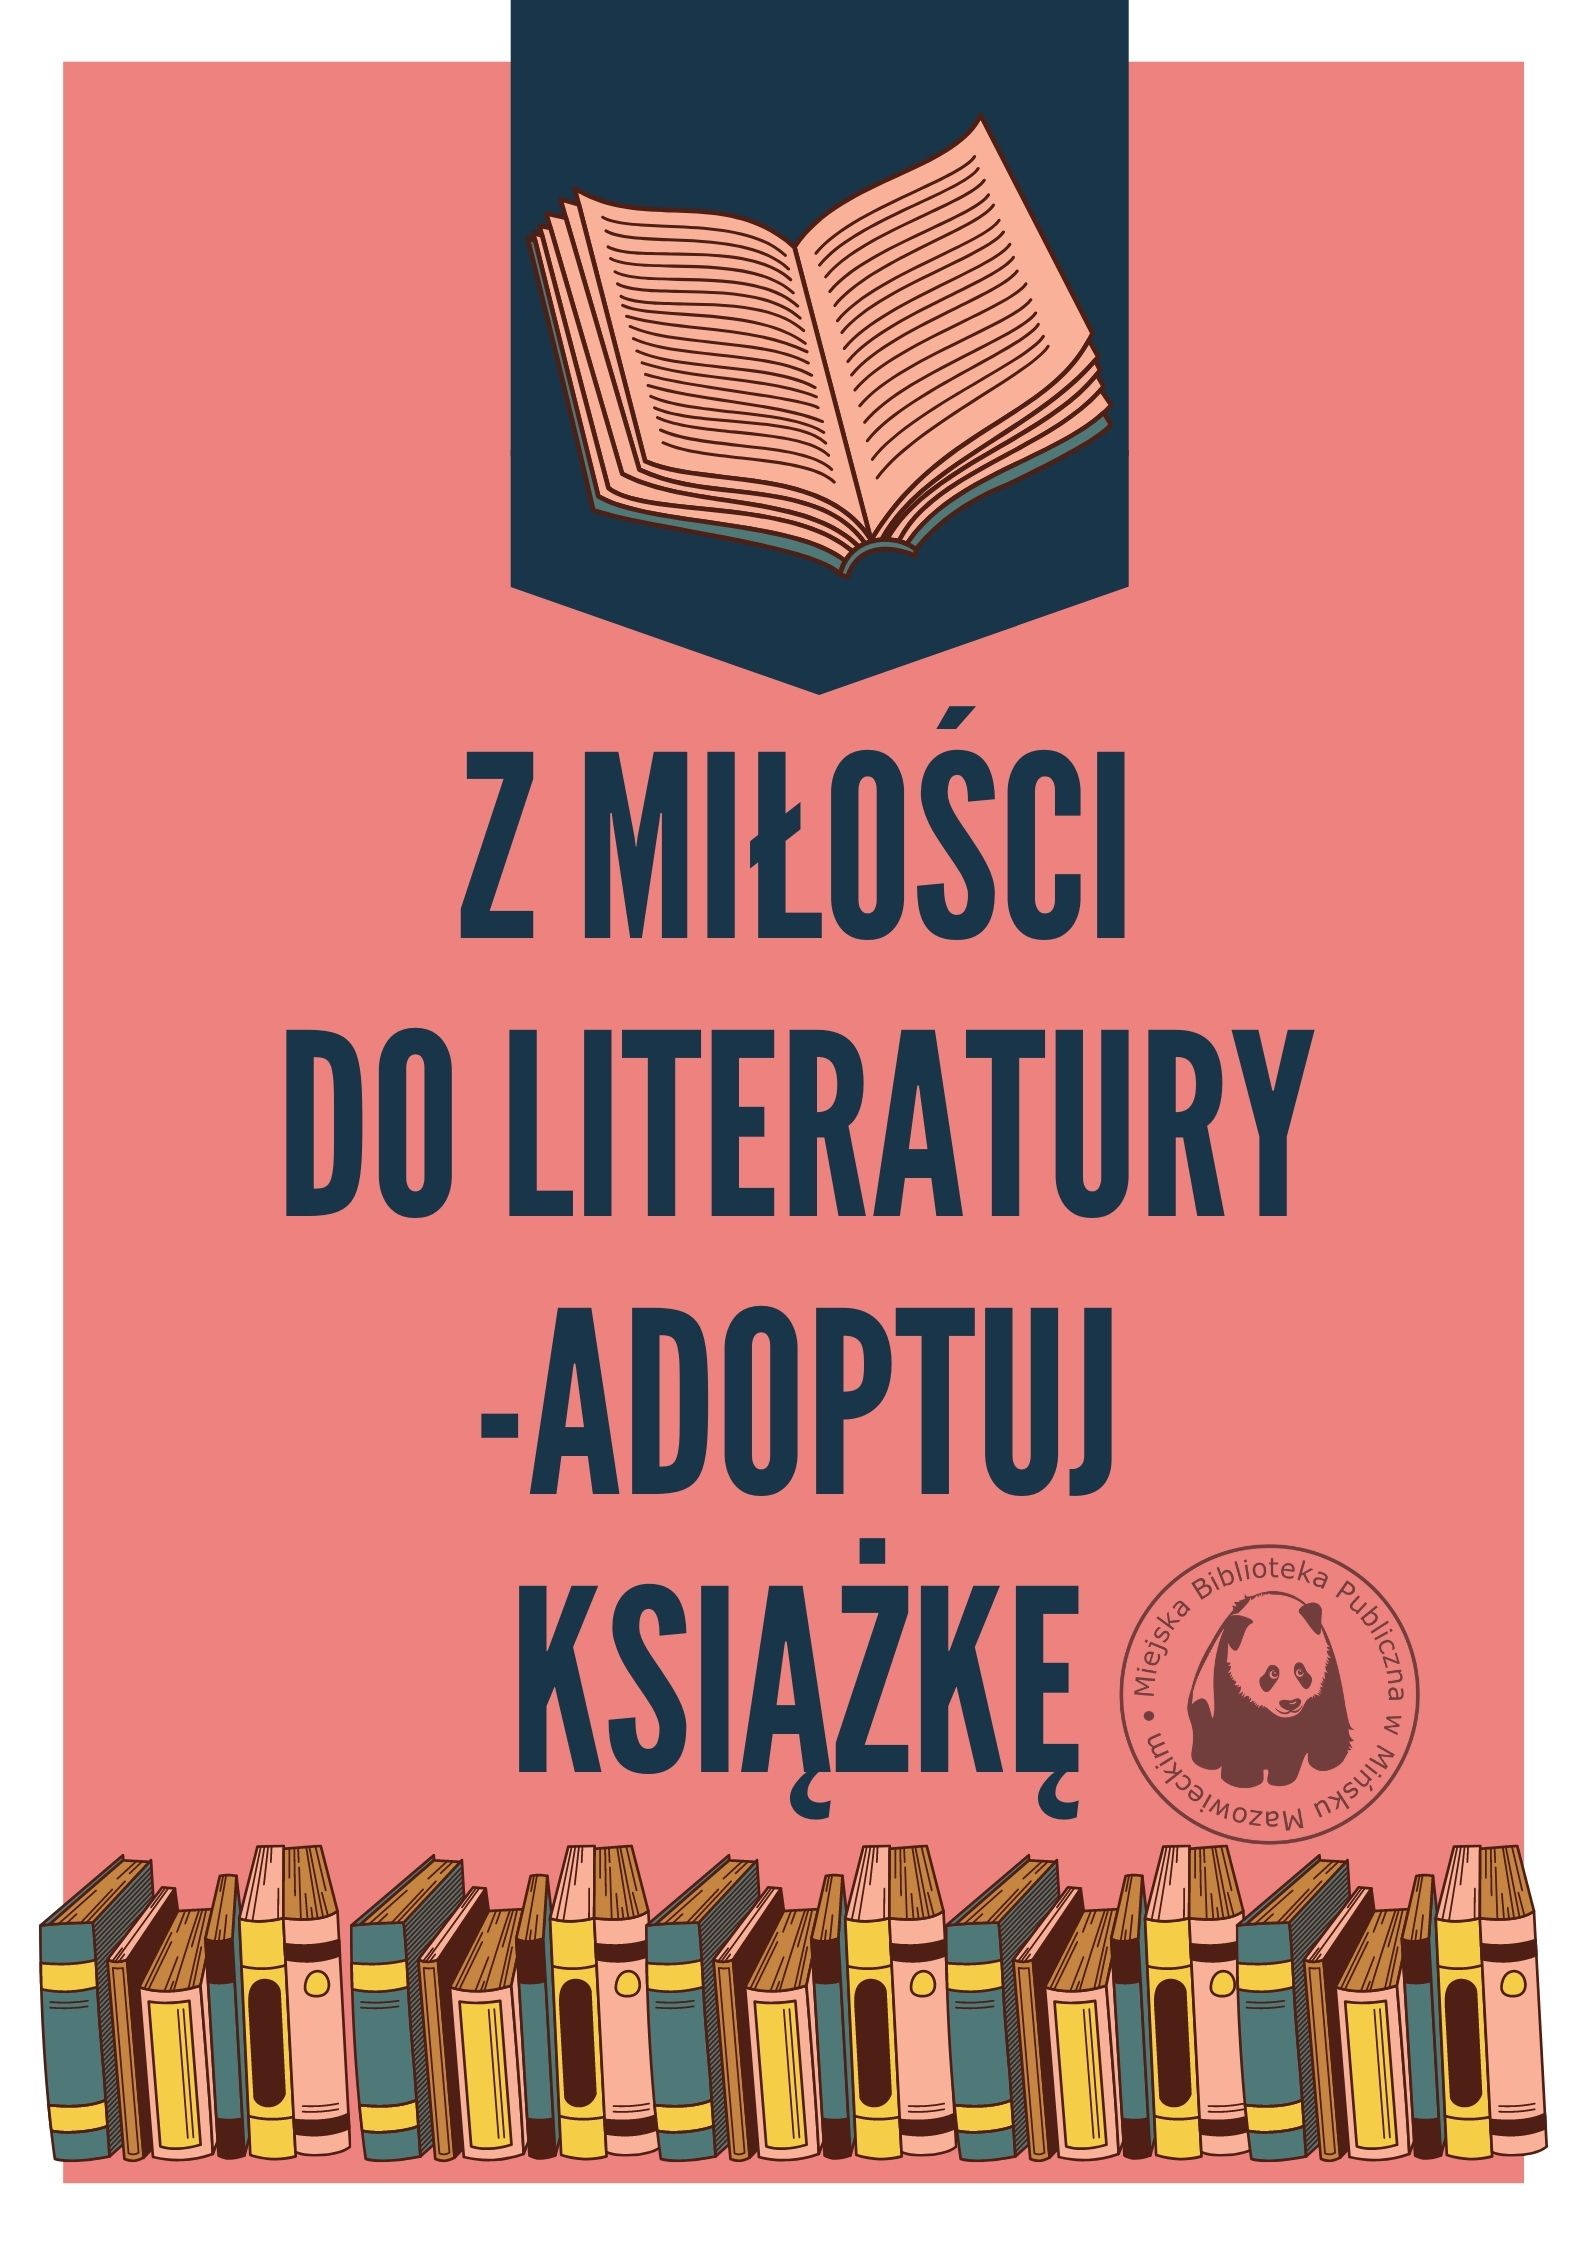 Plakat akcji z miłości do literatury adoptuj ksiażkę